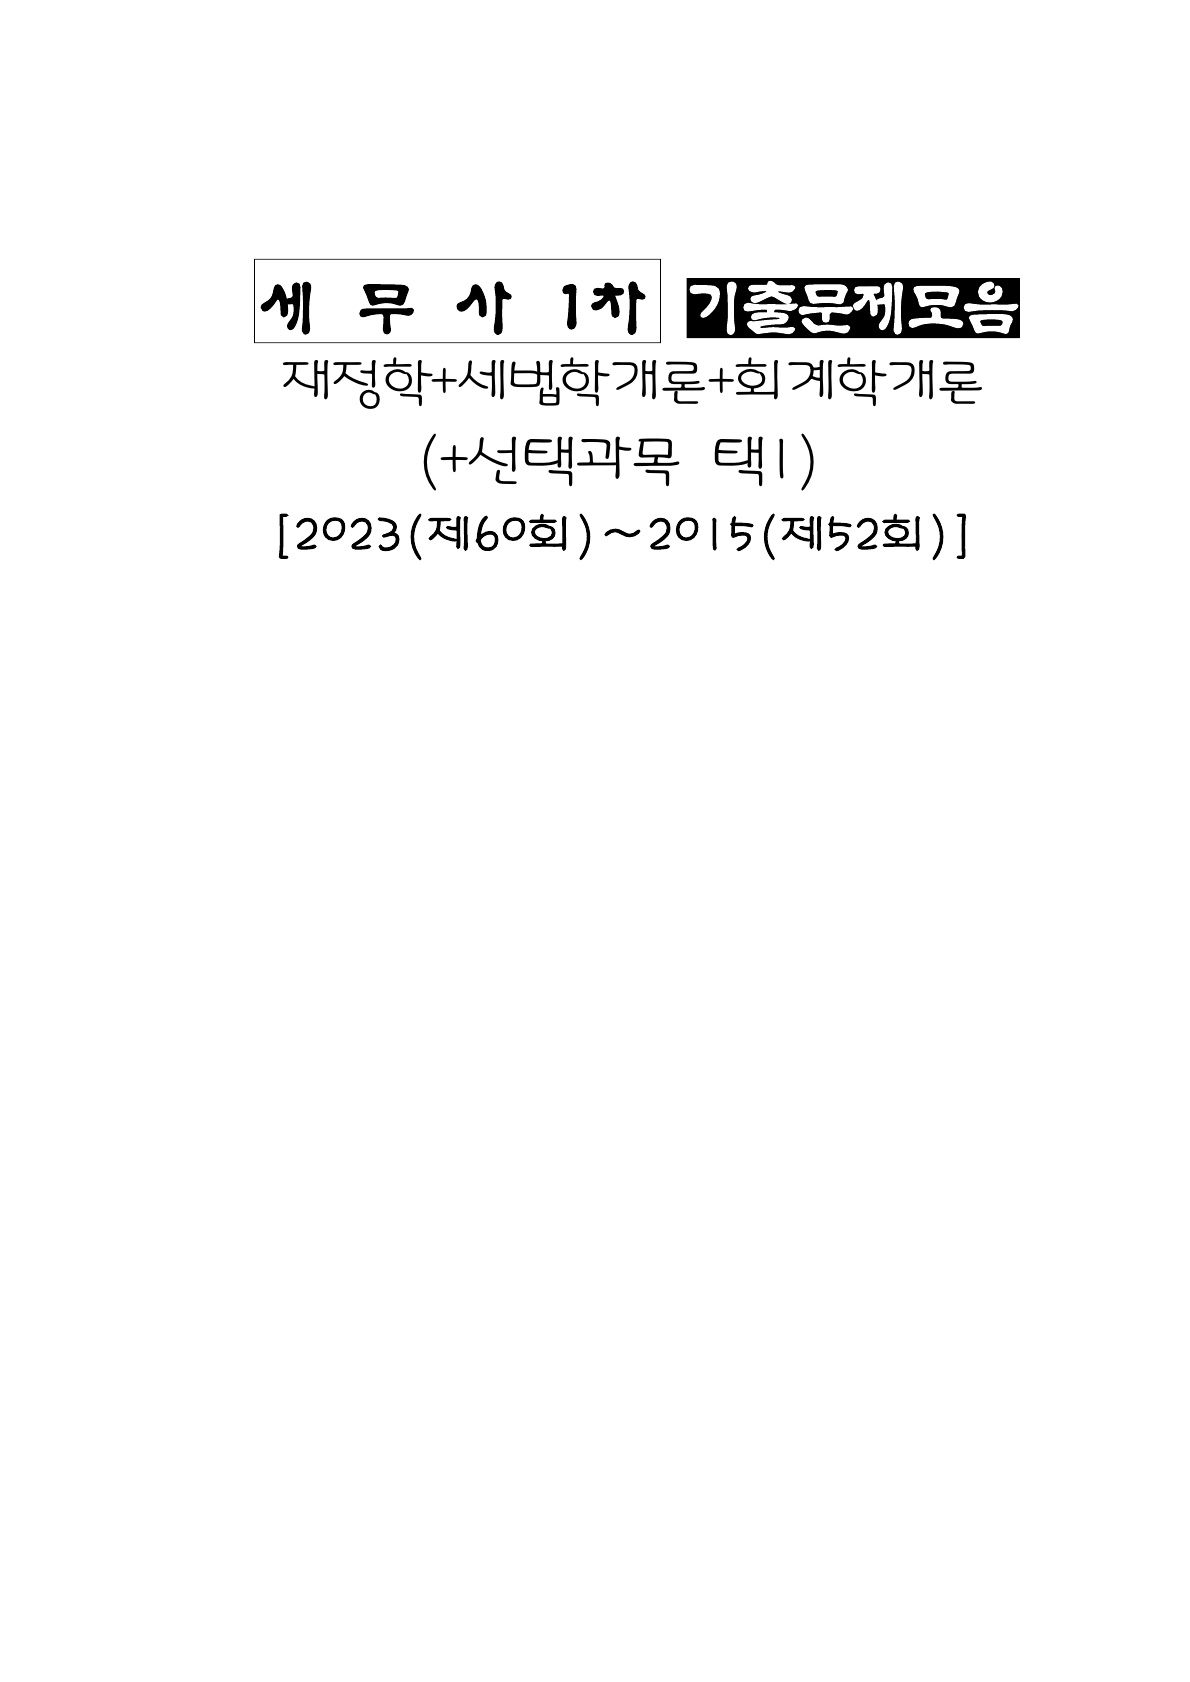 세무사] 1차 기출문제모음 [2022(제59회)~2015(52회)][총2권]]